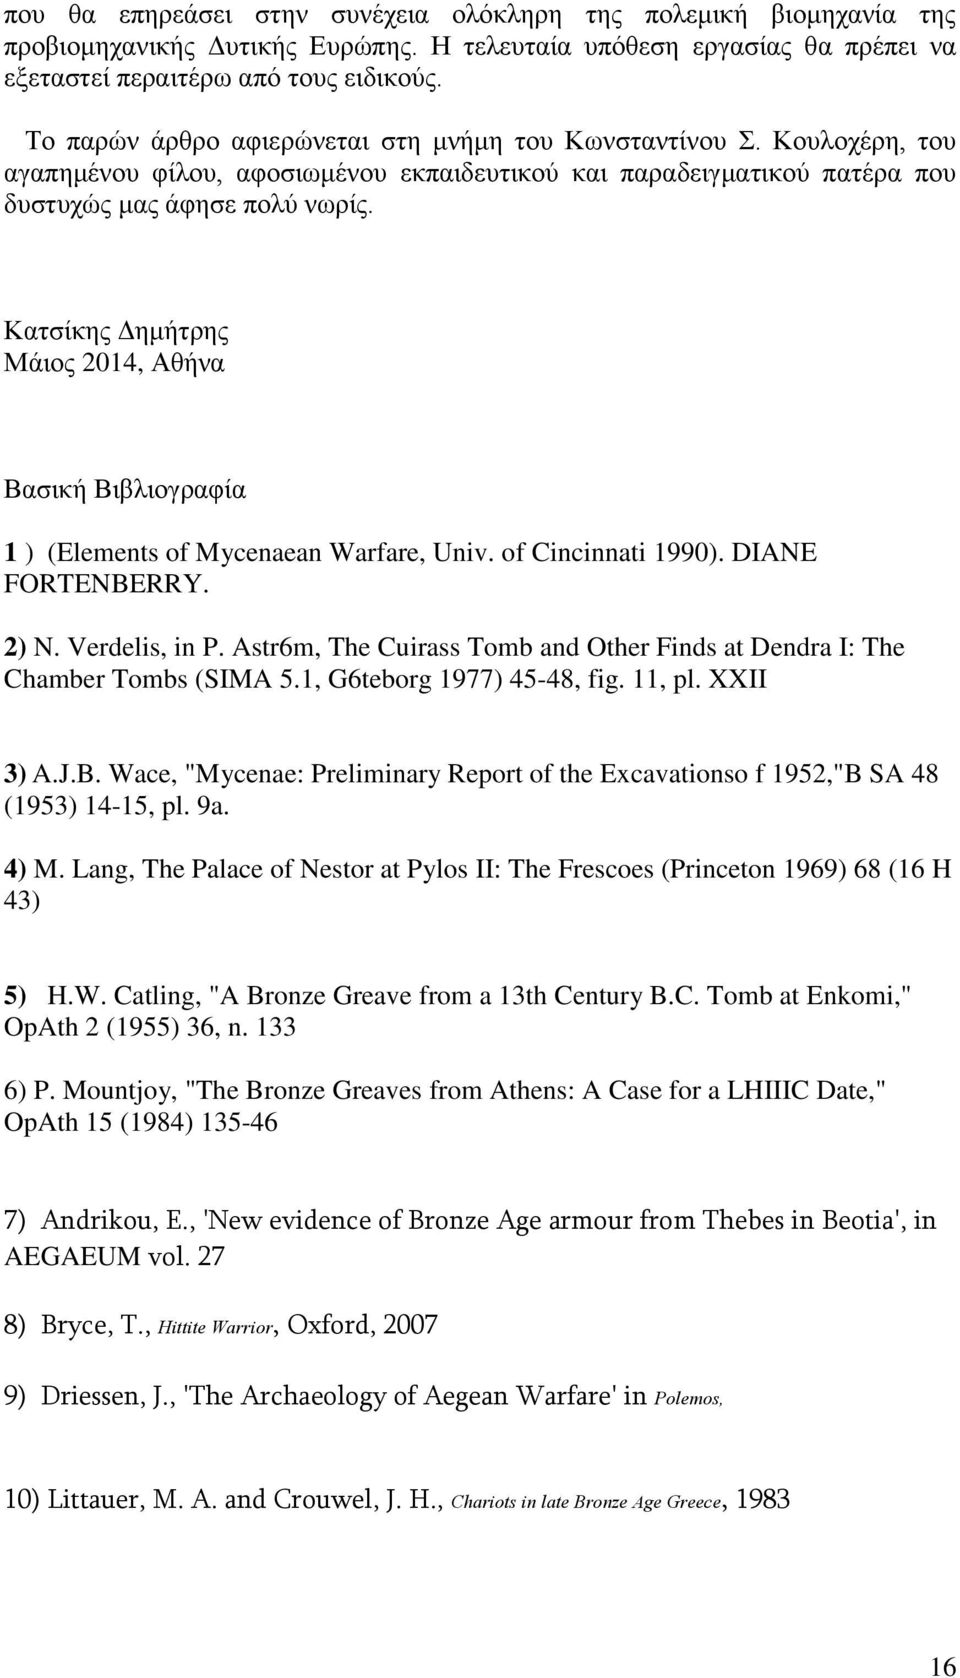 Κατσίκης Δημήτρης Μάιος 2014, Αθήνα Βασική Βιβλιογραφία 1 ) (Elements of Mycenaean Warfare, Univ. of Cincinnati 1990). DIANE FORTENBERRY. 2) N. Verdelis, in P.